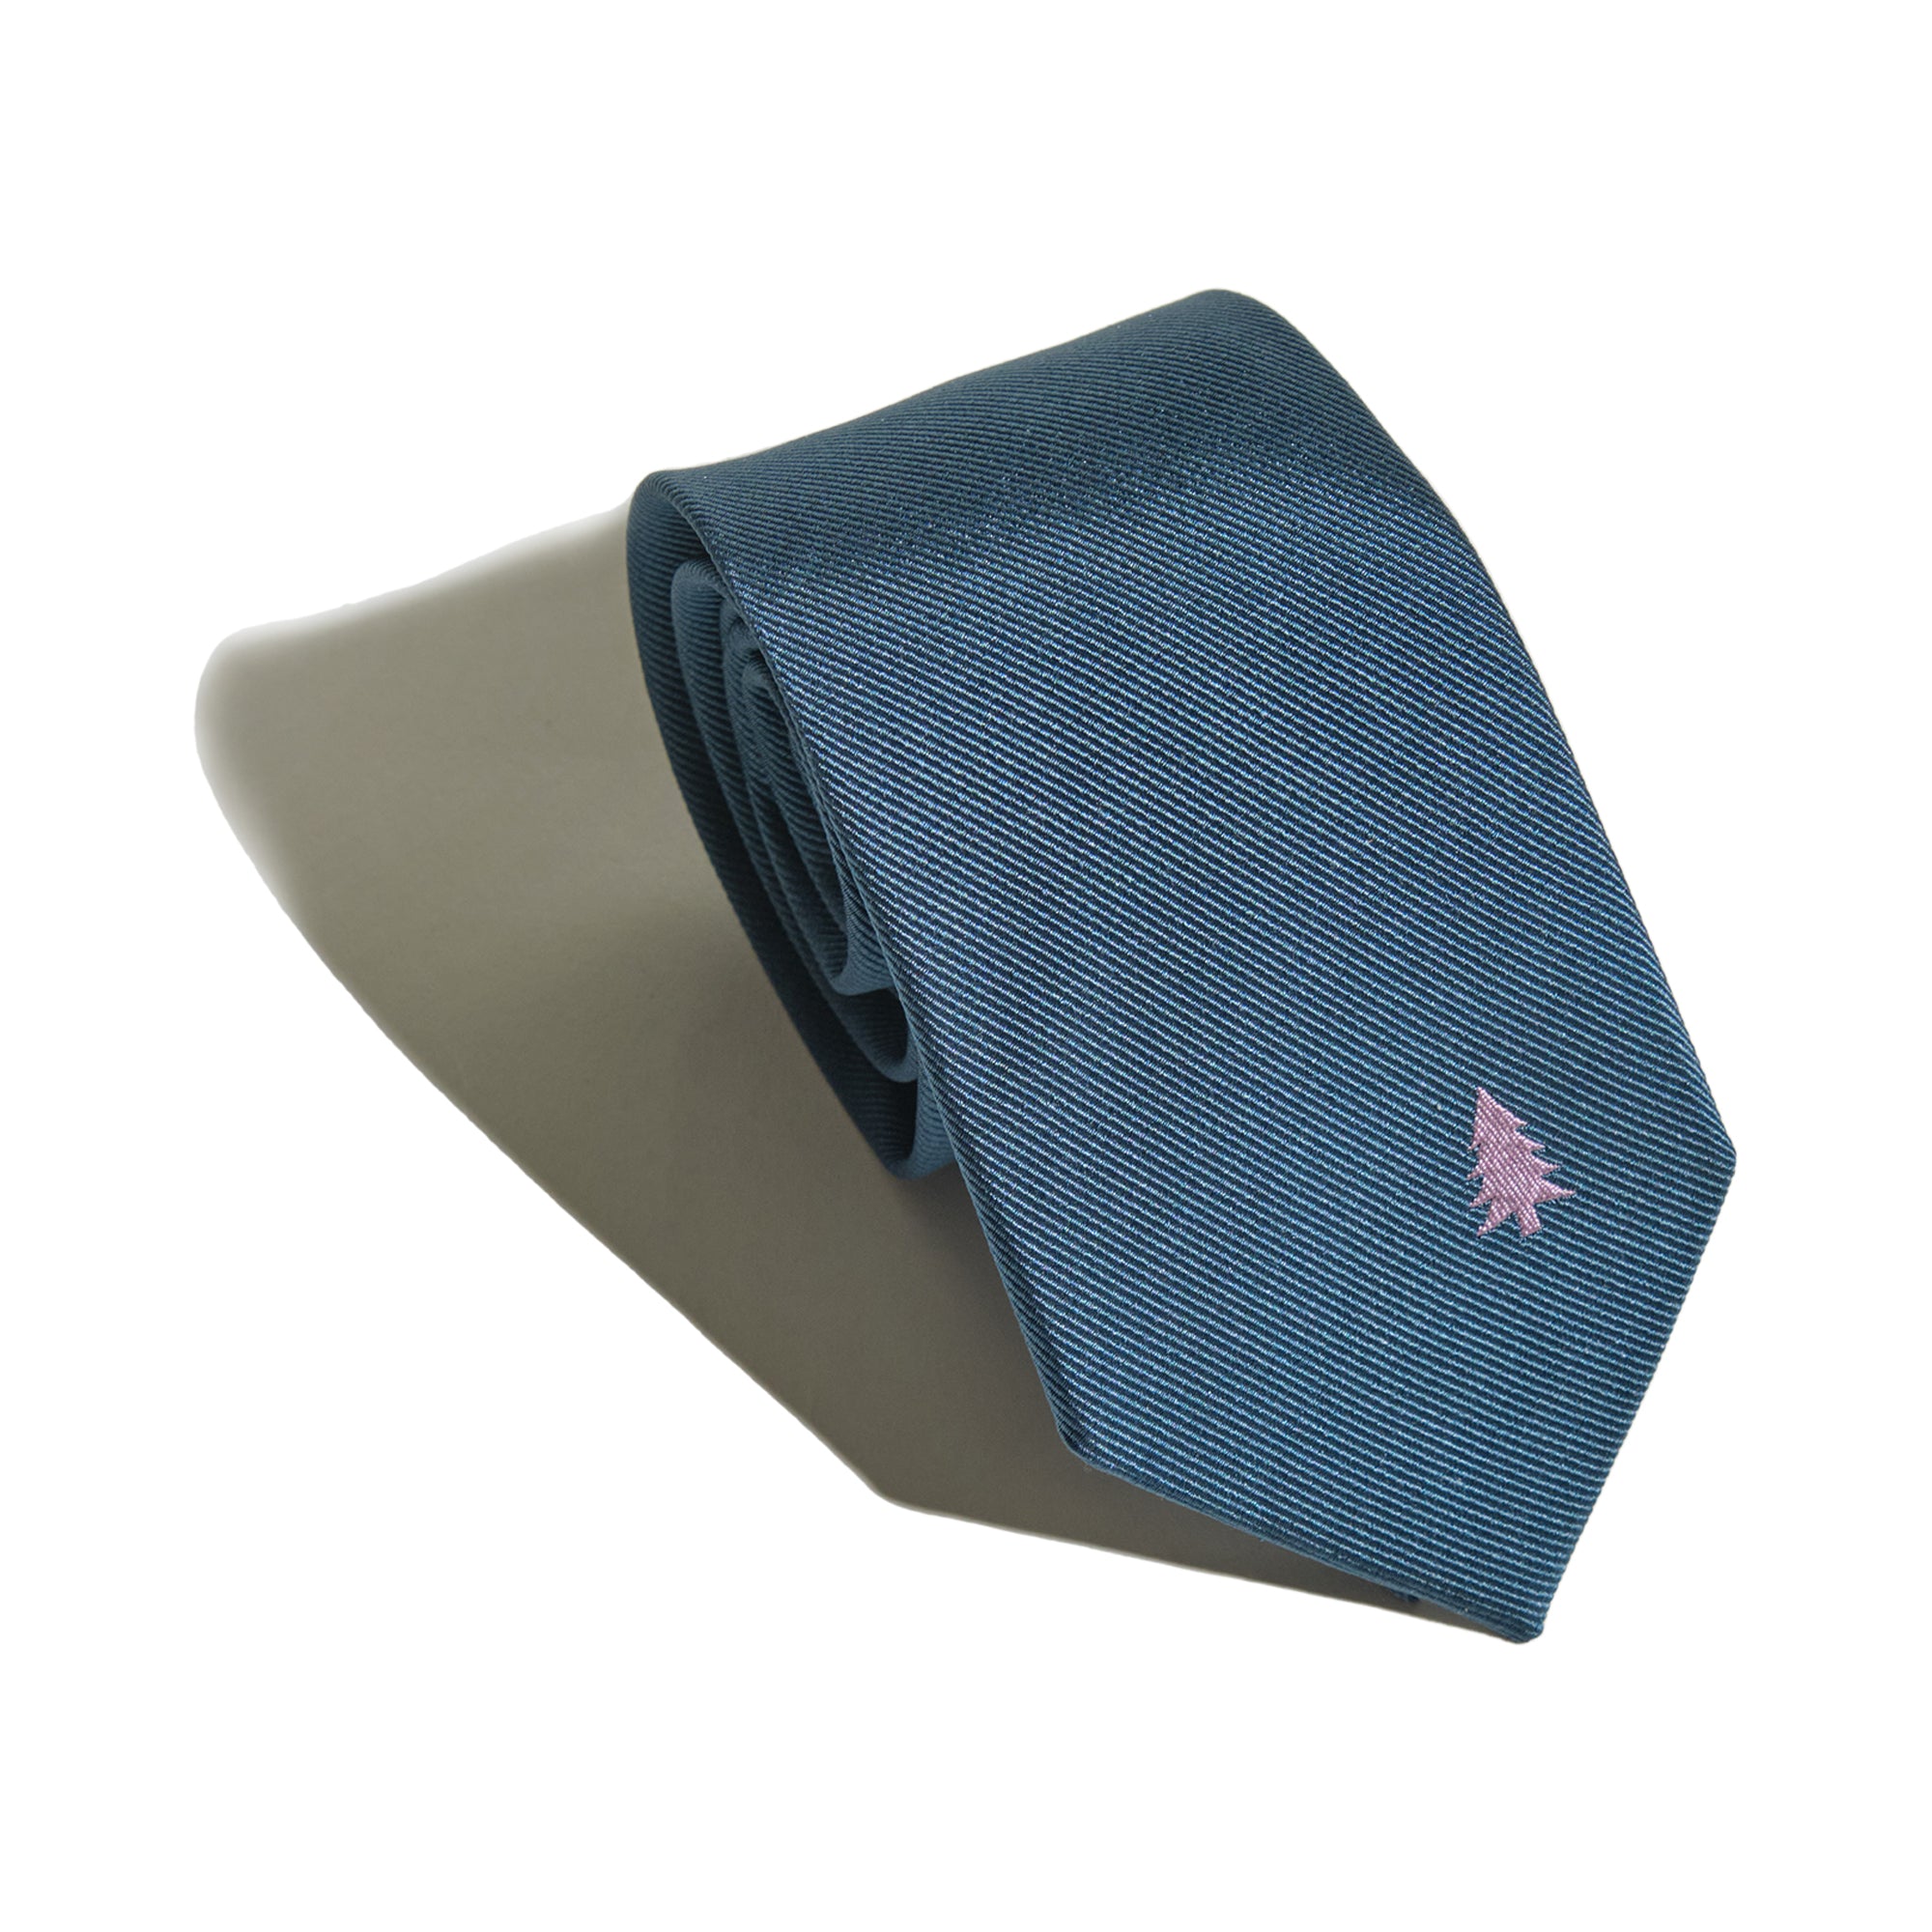 "Blush Pine" Silk Tie - Navy Blue - Navy Blue - LOST PATTERN Tie